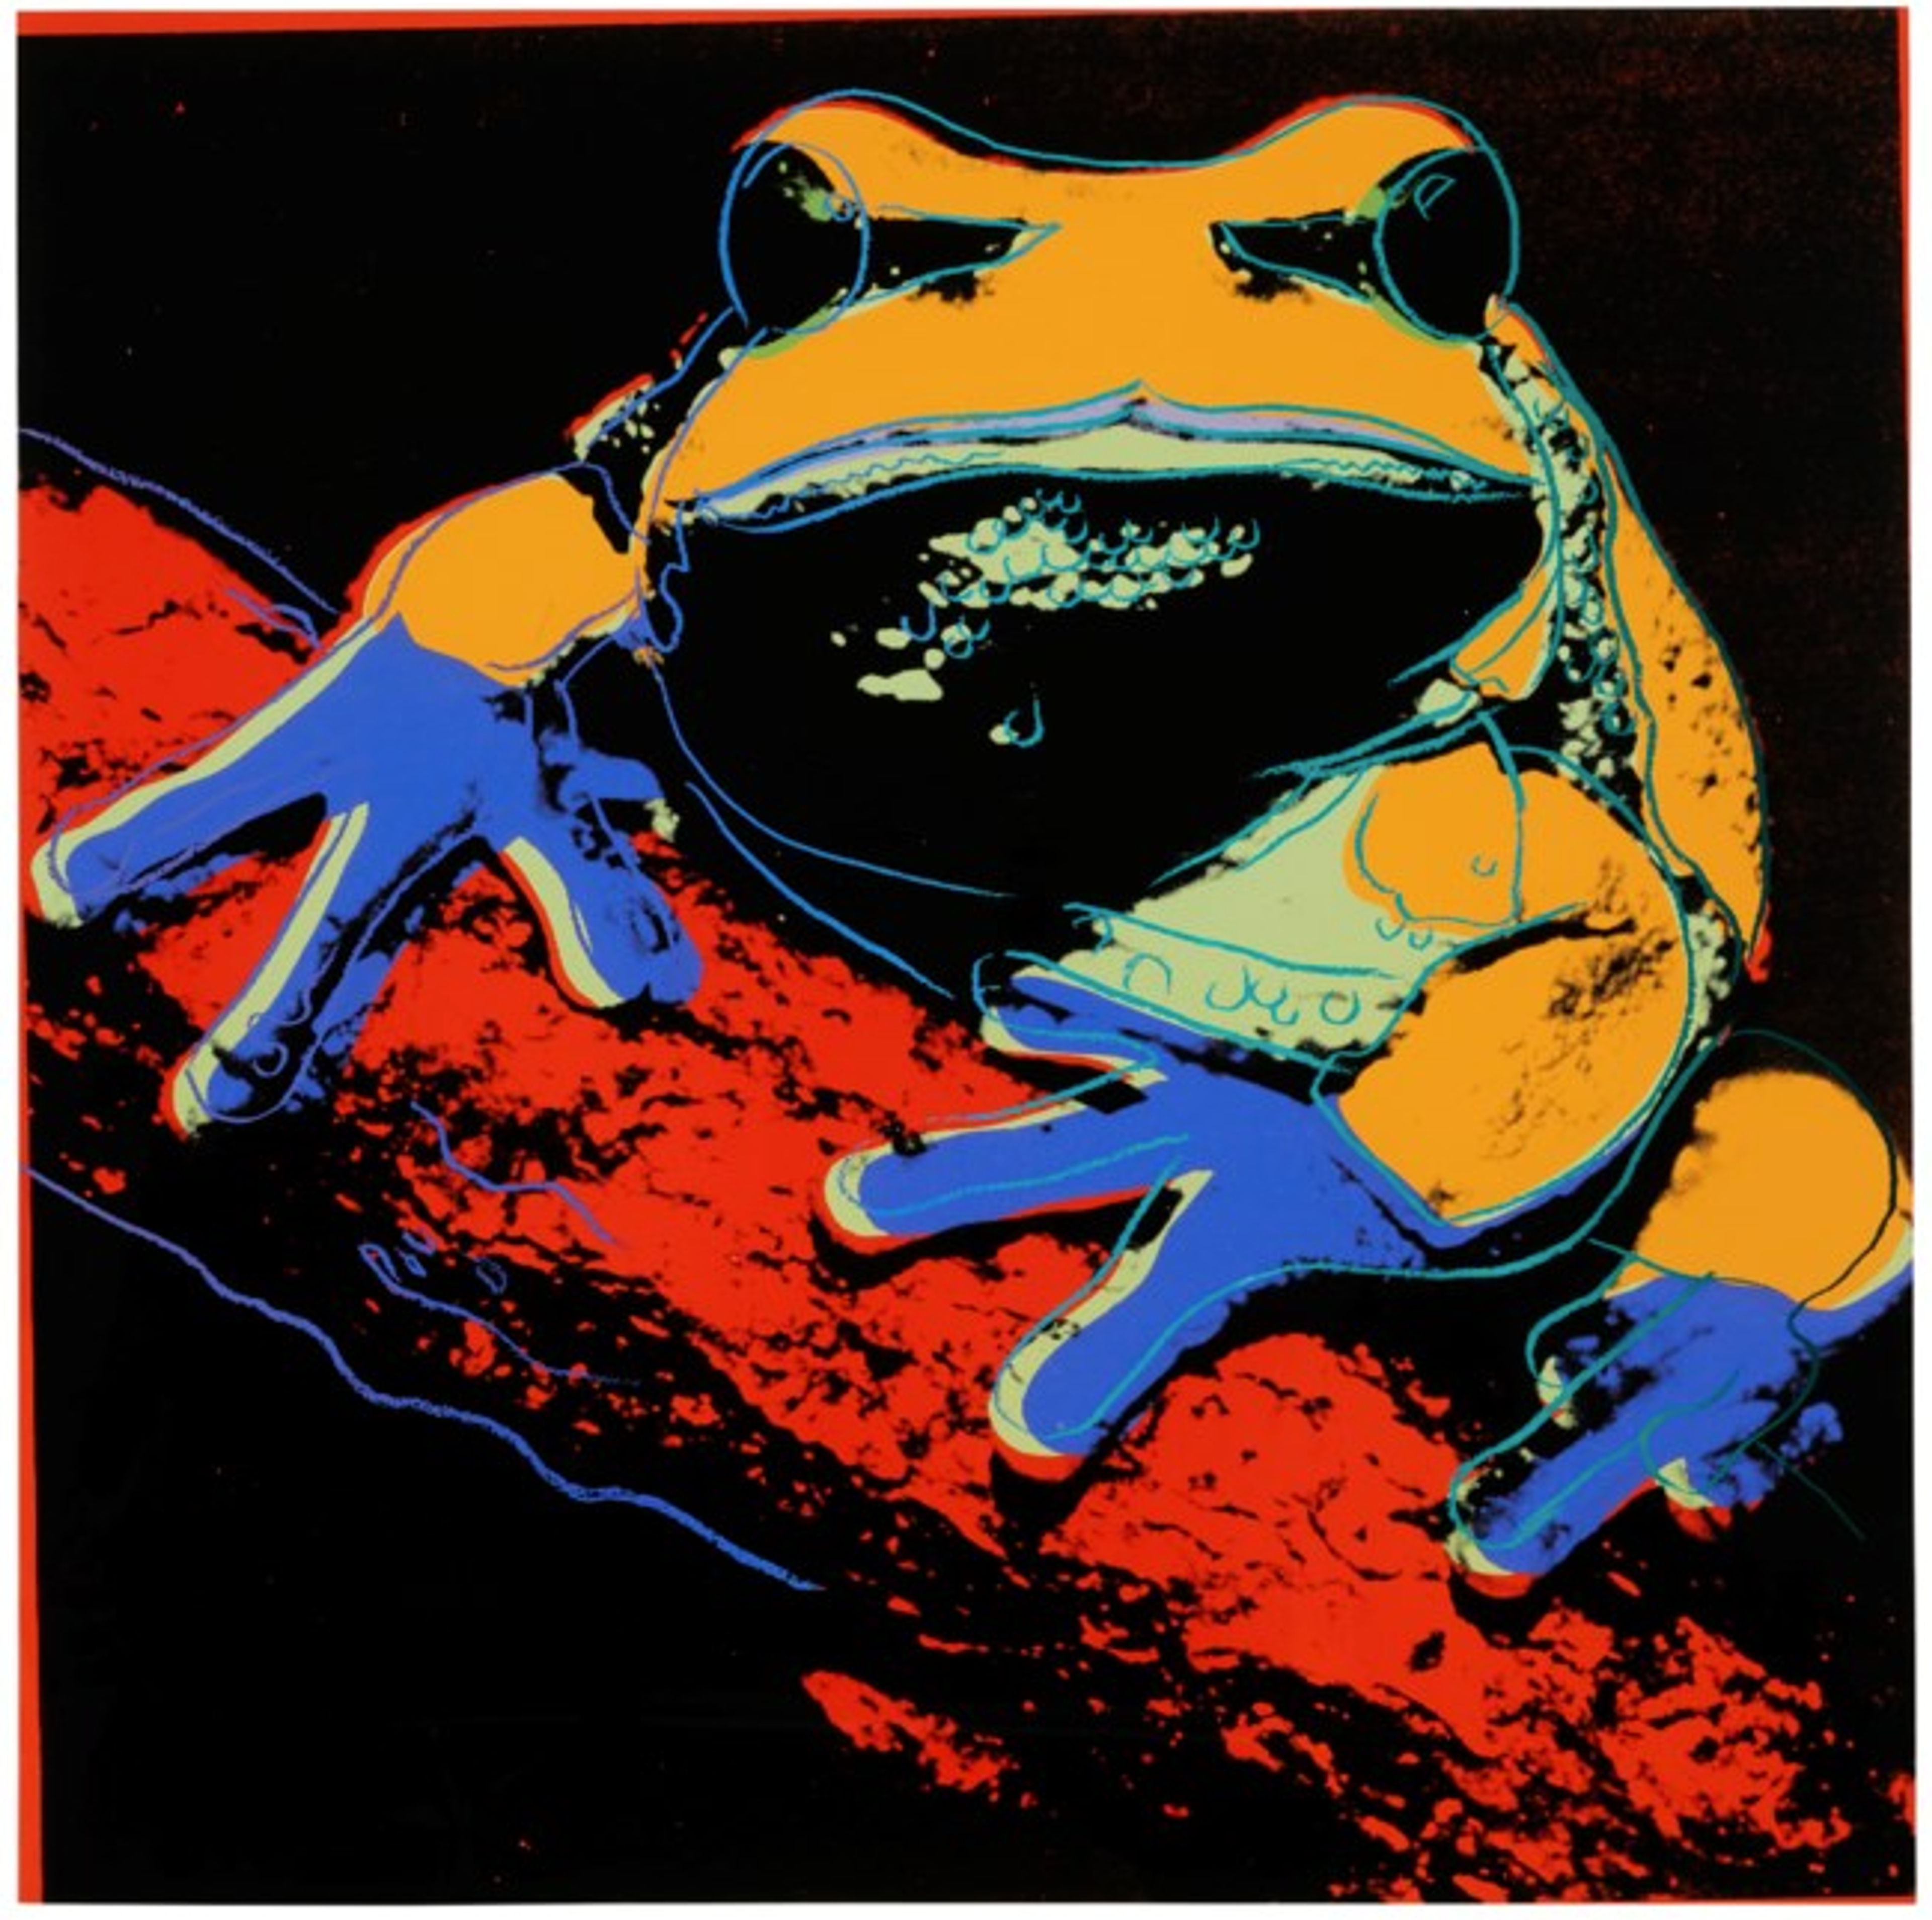 Pine Barrens Tree Frog (TP) (F. & S. II.294) by Andy Warhol - MyArtBroker 